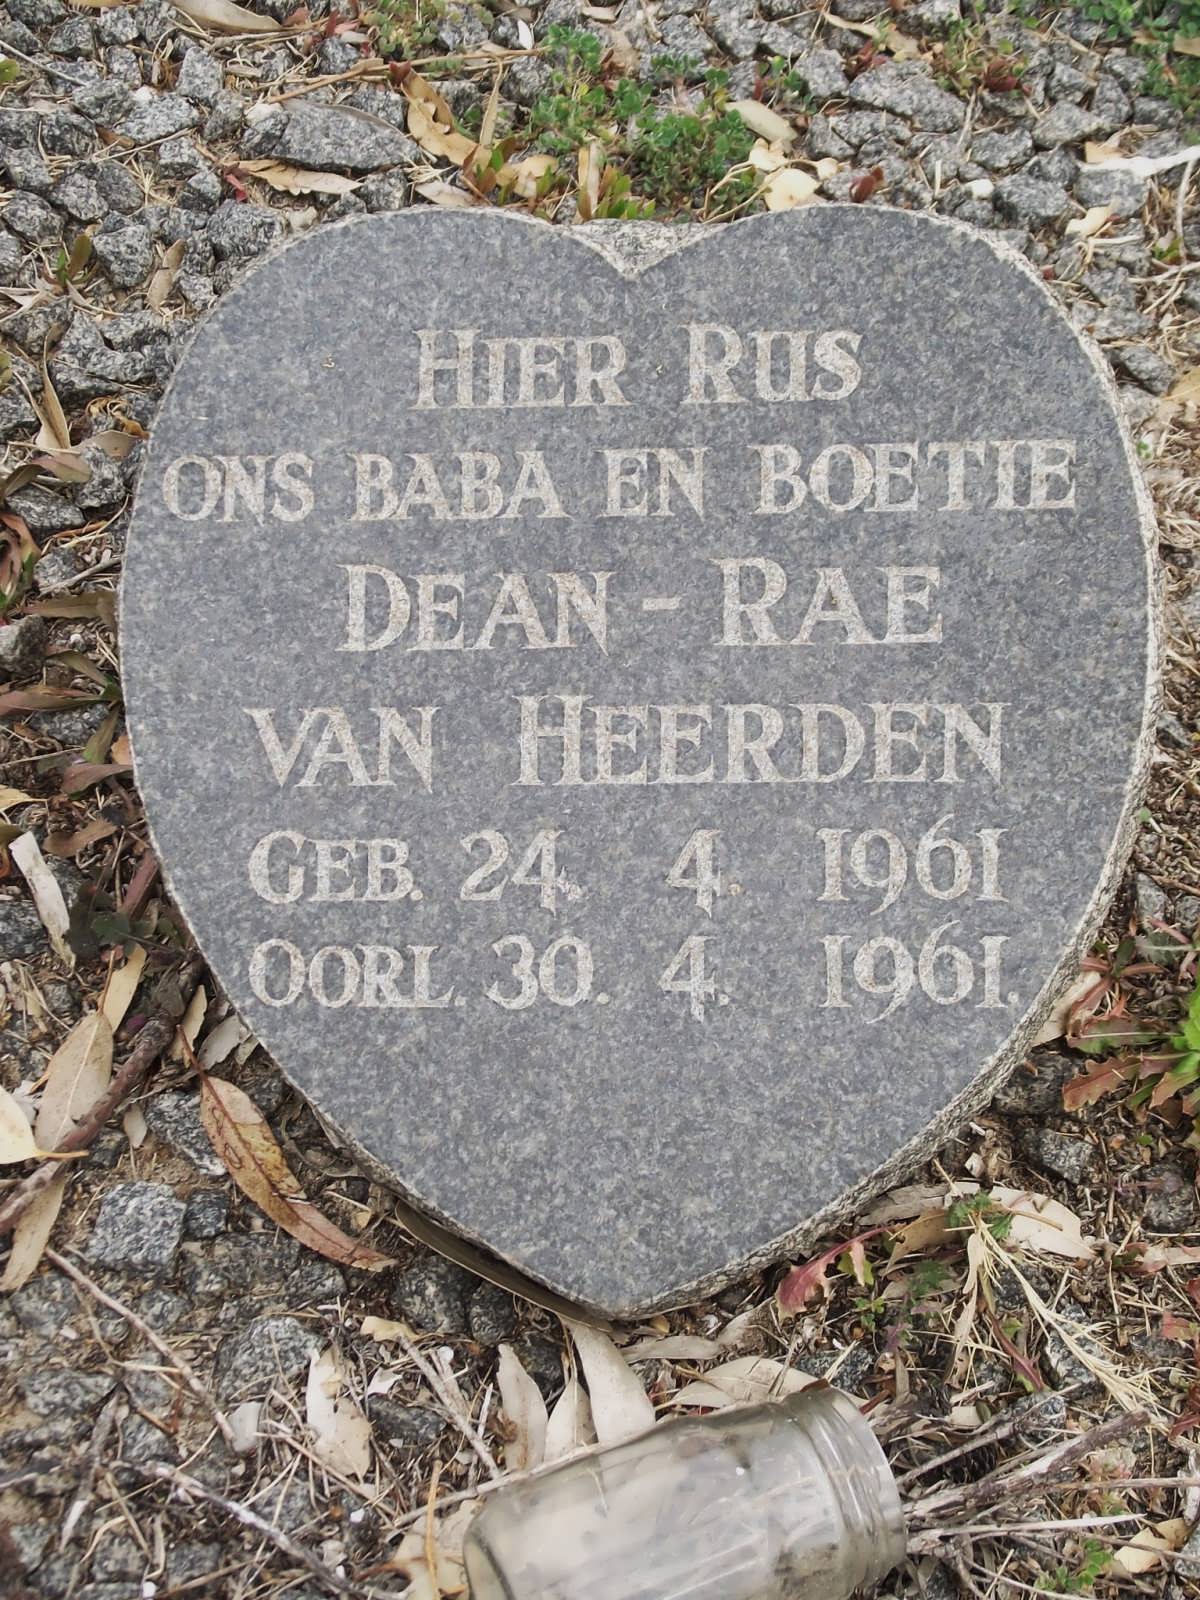 HEERDEN Dean Rae, van 1961-1961